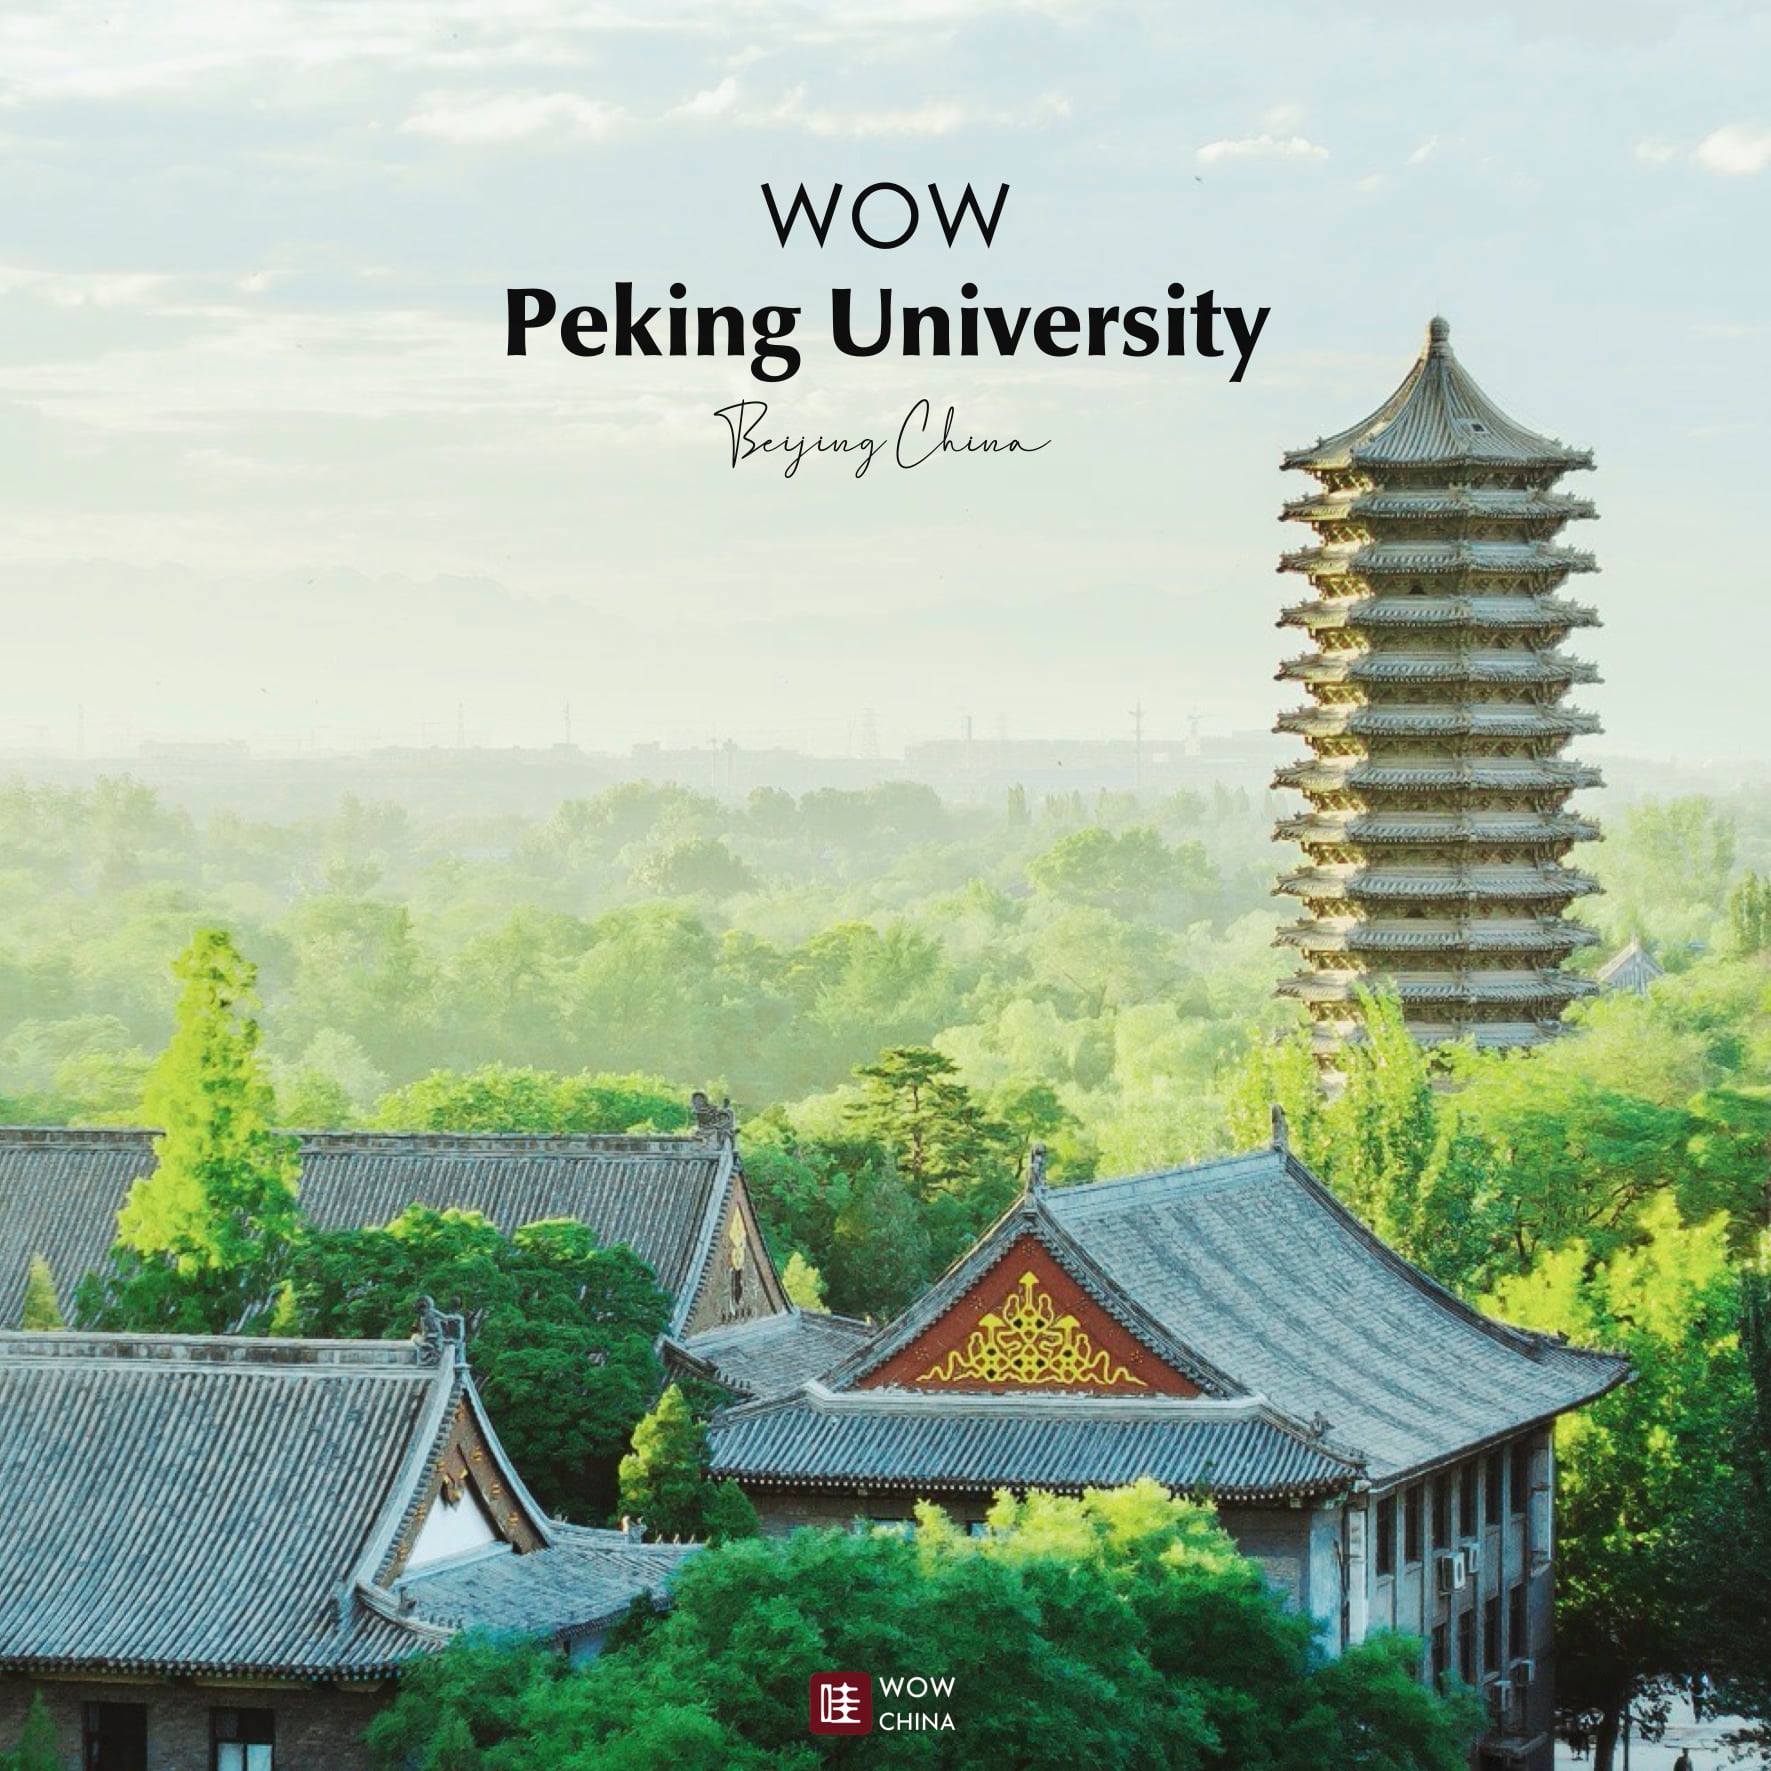 มหาวิทยาลัยจีนสุด #WOW
C9 league กลุ่มมหาวิทยาลัยชั้นนำของจีนระดับโลก 9 แห่ง
.
ท…